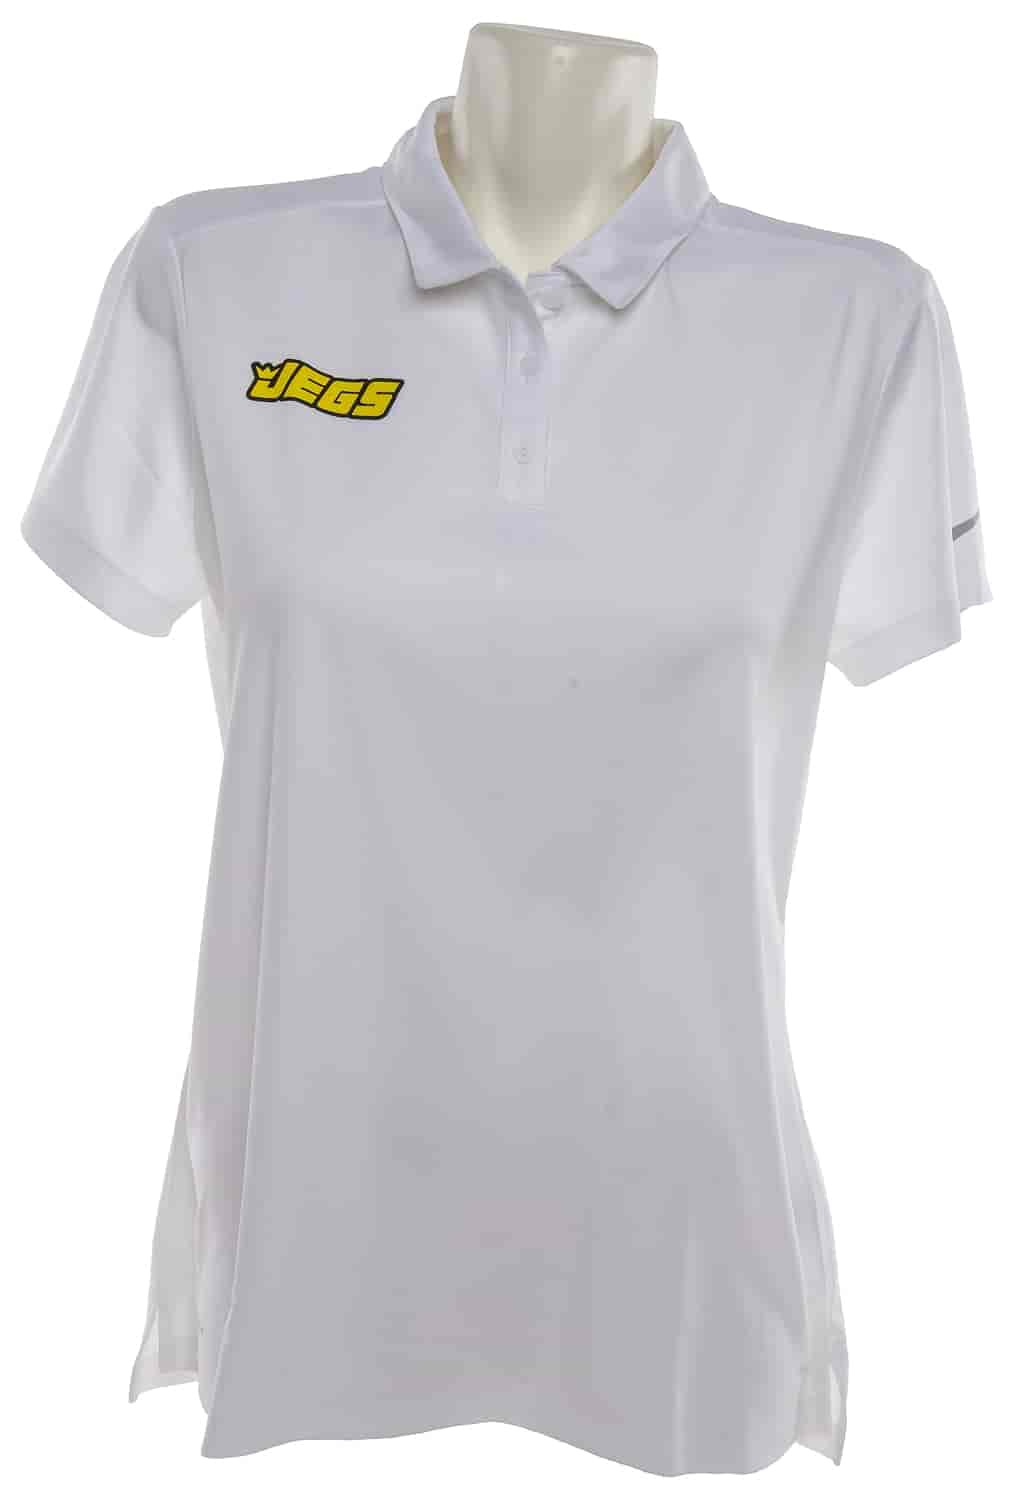 JEGS Nike Ladies Dri-Fit Polo Shirt